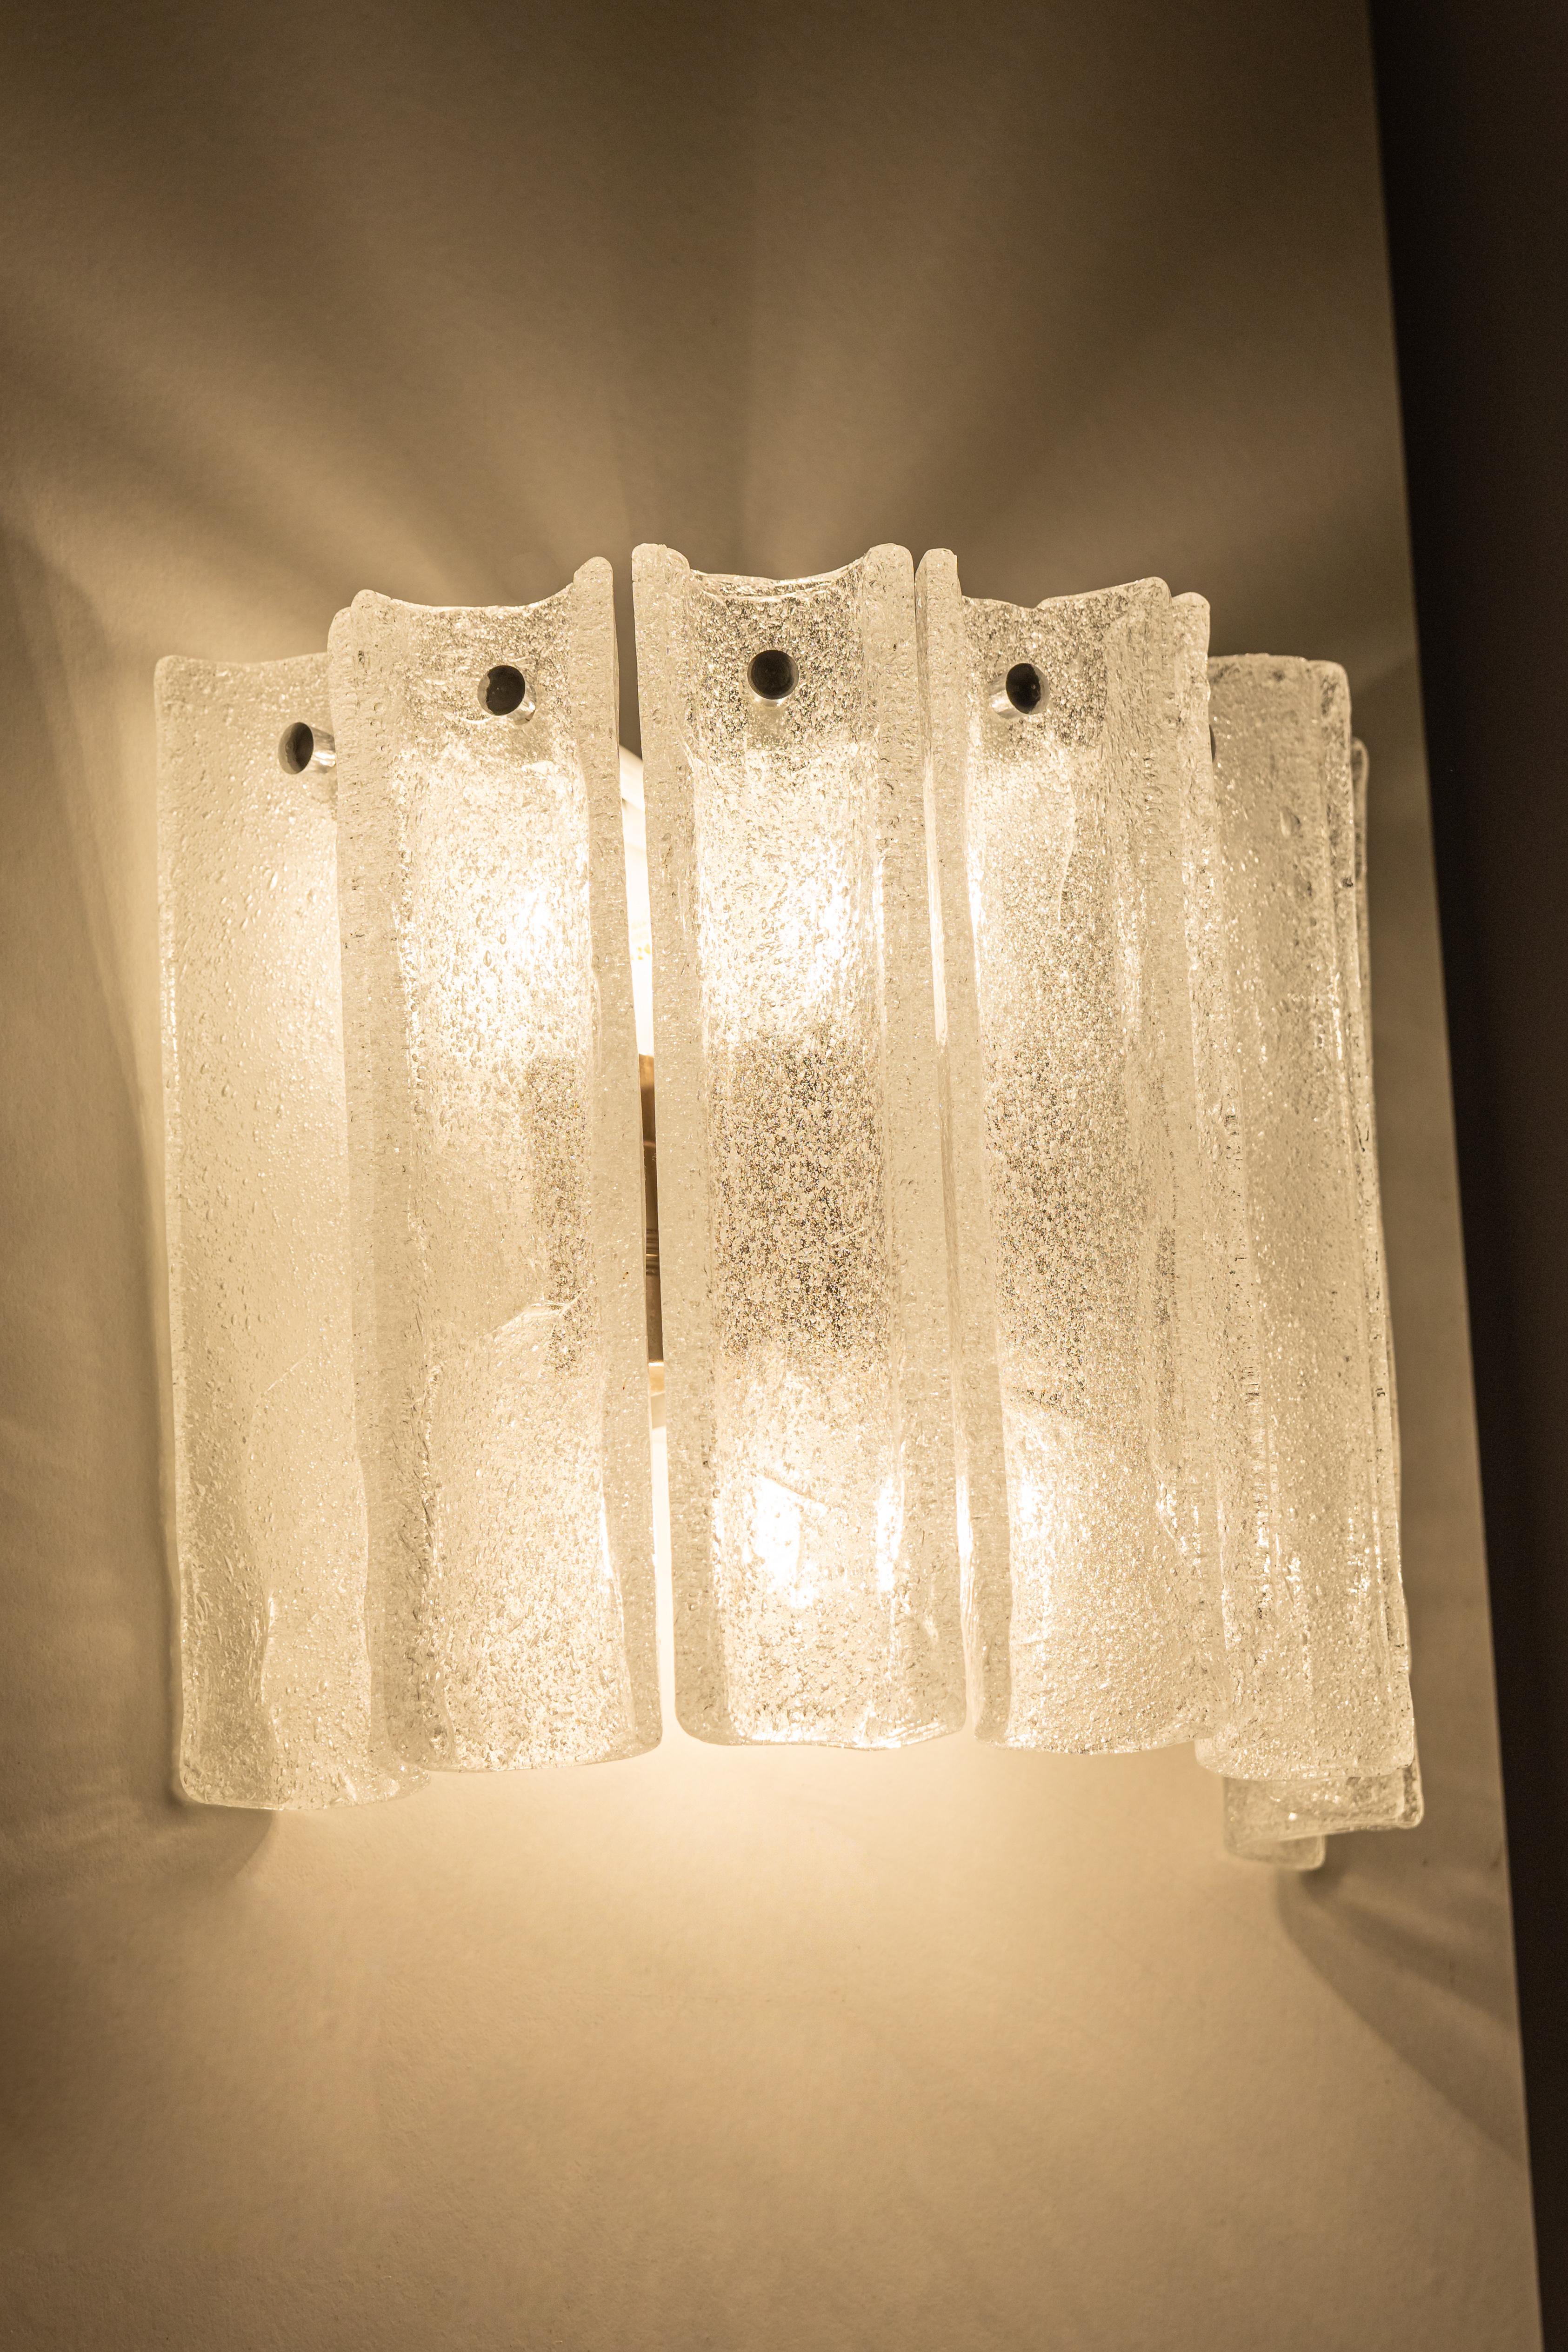 Wunderschöne Wandleuchte aus der Mitte des Jahrhunderts mit Eisglas, hergestellt von Kalmar, Österreich, ca. 1960-1969.
Hochwertig und in sehr gutem Zustand. Gereinigt, gut verkabelt und einsatzbereit.  

Die Leuchte benötigt 5 x E14 Small